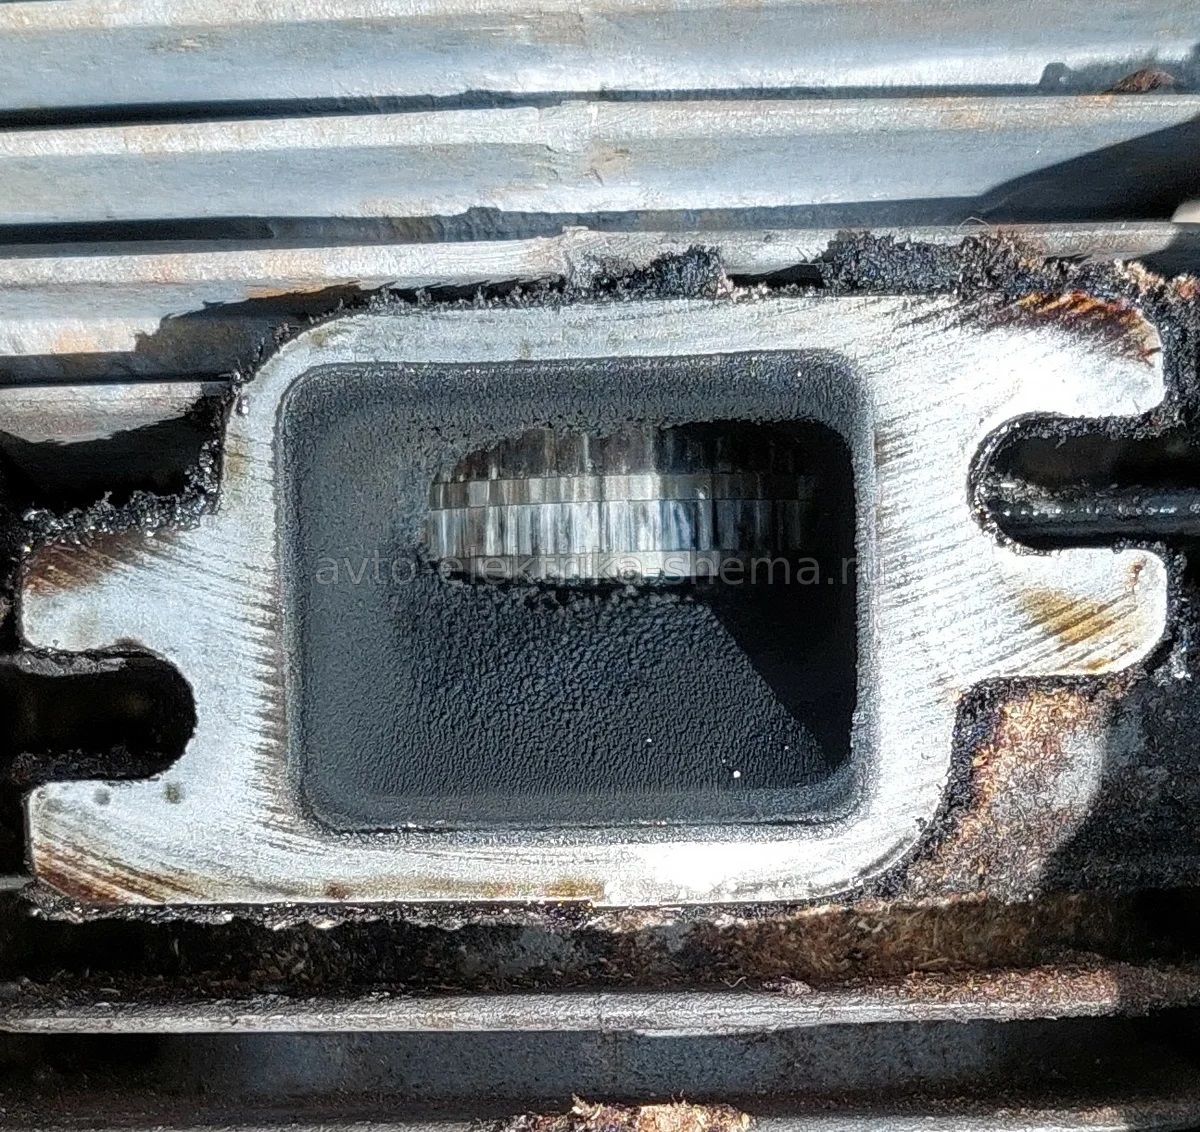 Выпускное окно цилиндра, видно поршень и кольца